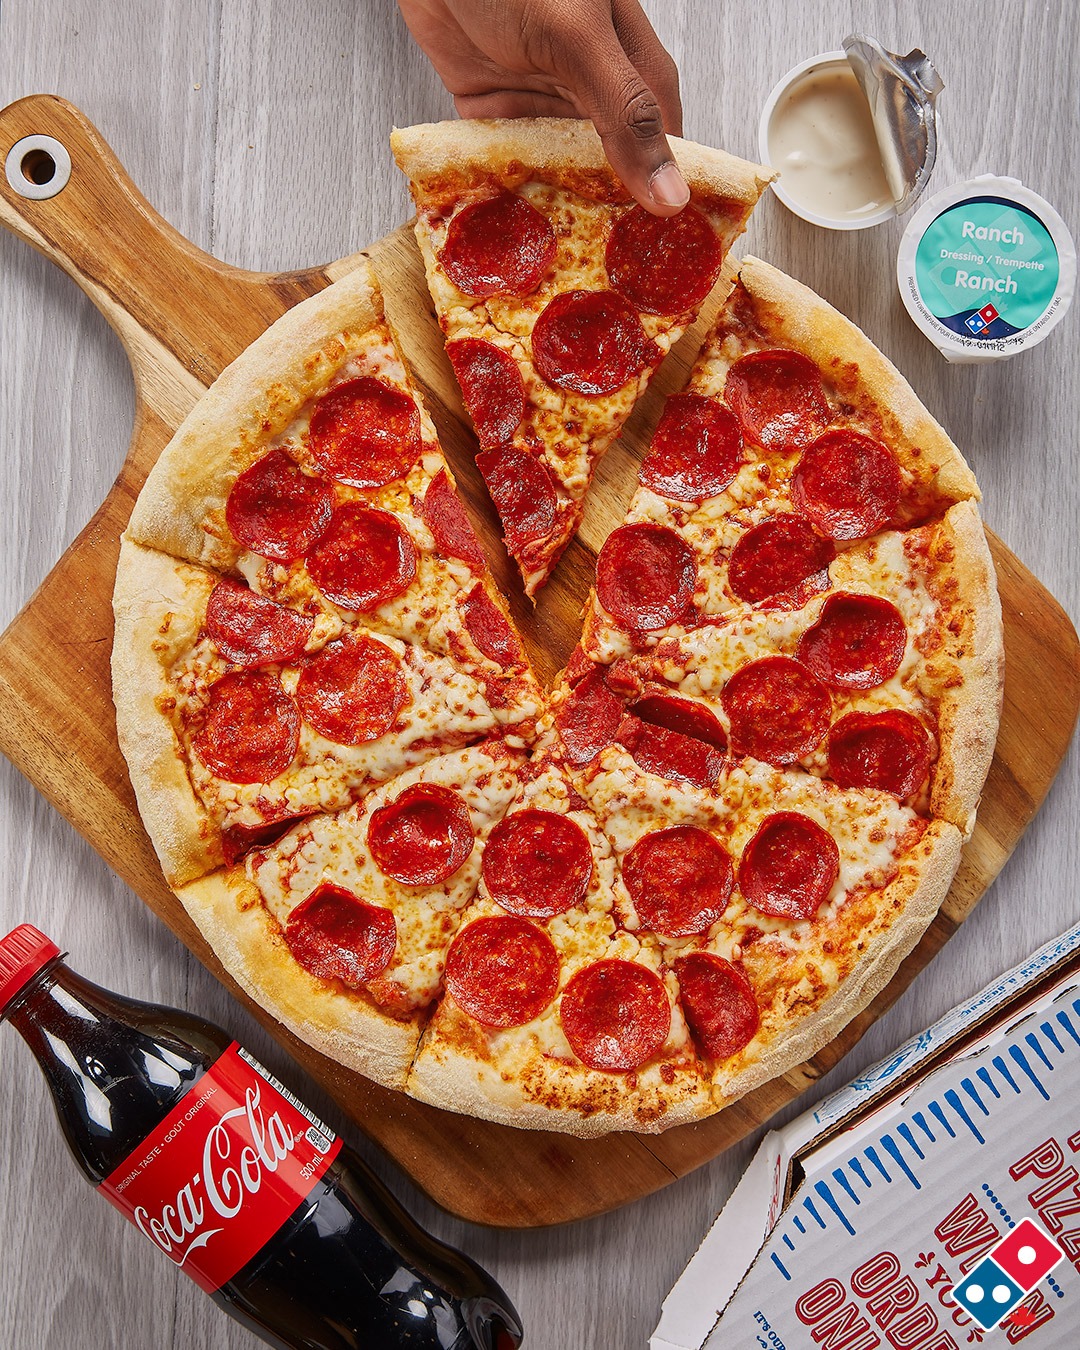 voici-comment-obtenir-une-pizza-domino-s-moyenne-gratuite-mtlnouvelles-ca